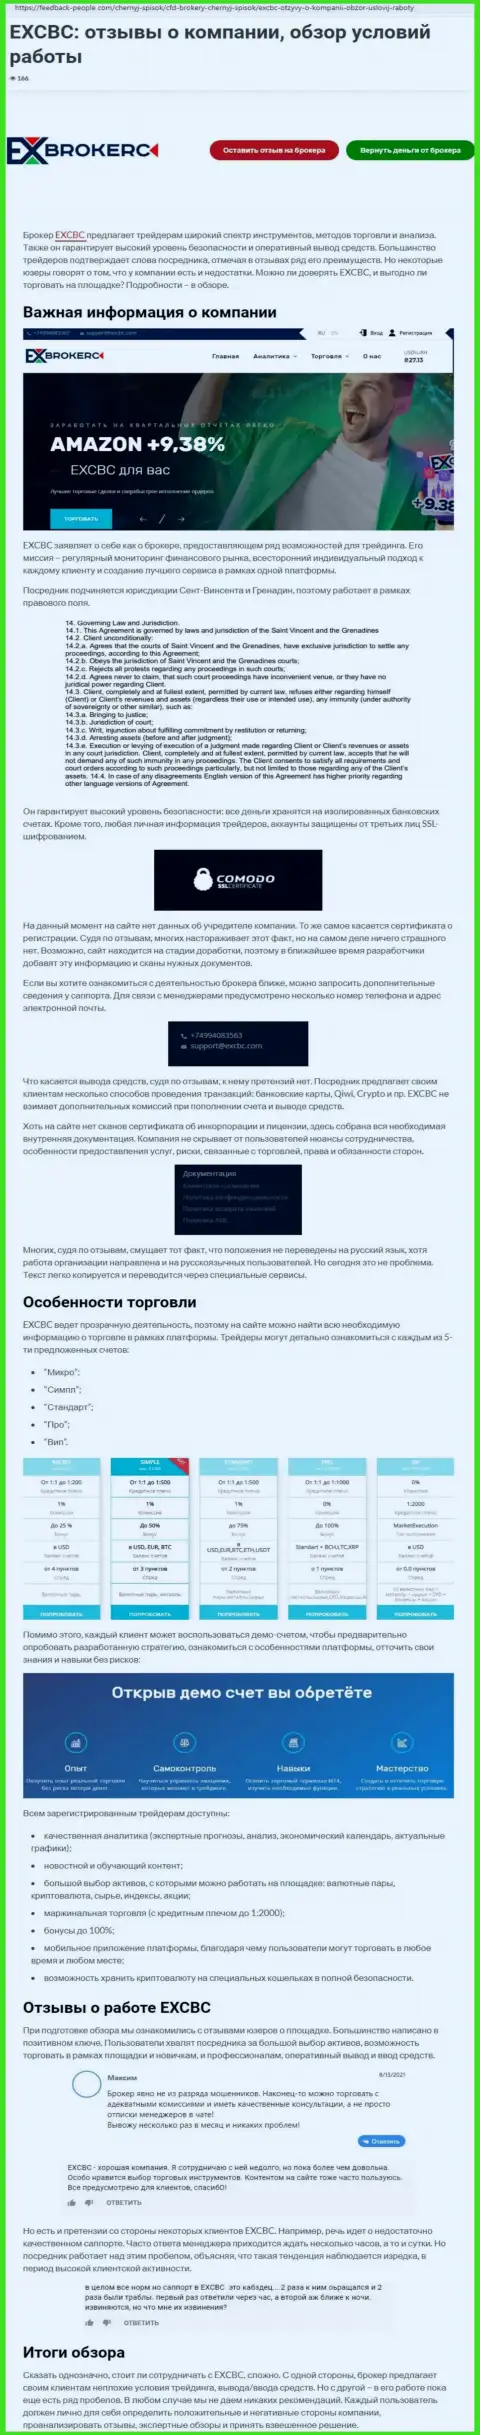 Обзор деятельности форекс компании ЕХ Брокерс на онлайн-ресурсе ФеддБэк Пеопле Ком